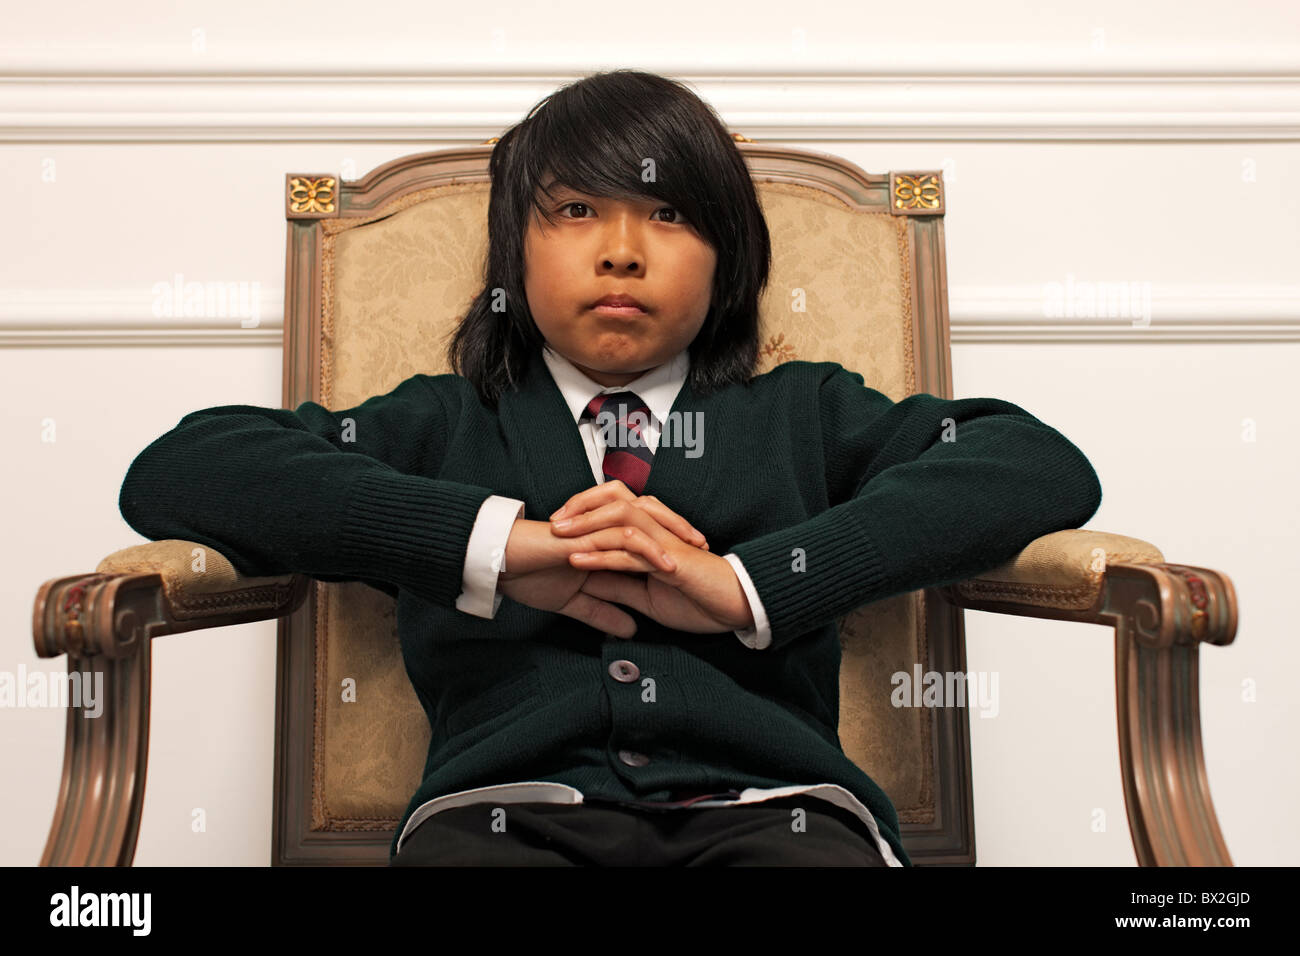 Serious Vietnamese boy sitting on elegant chair Stock Photo